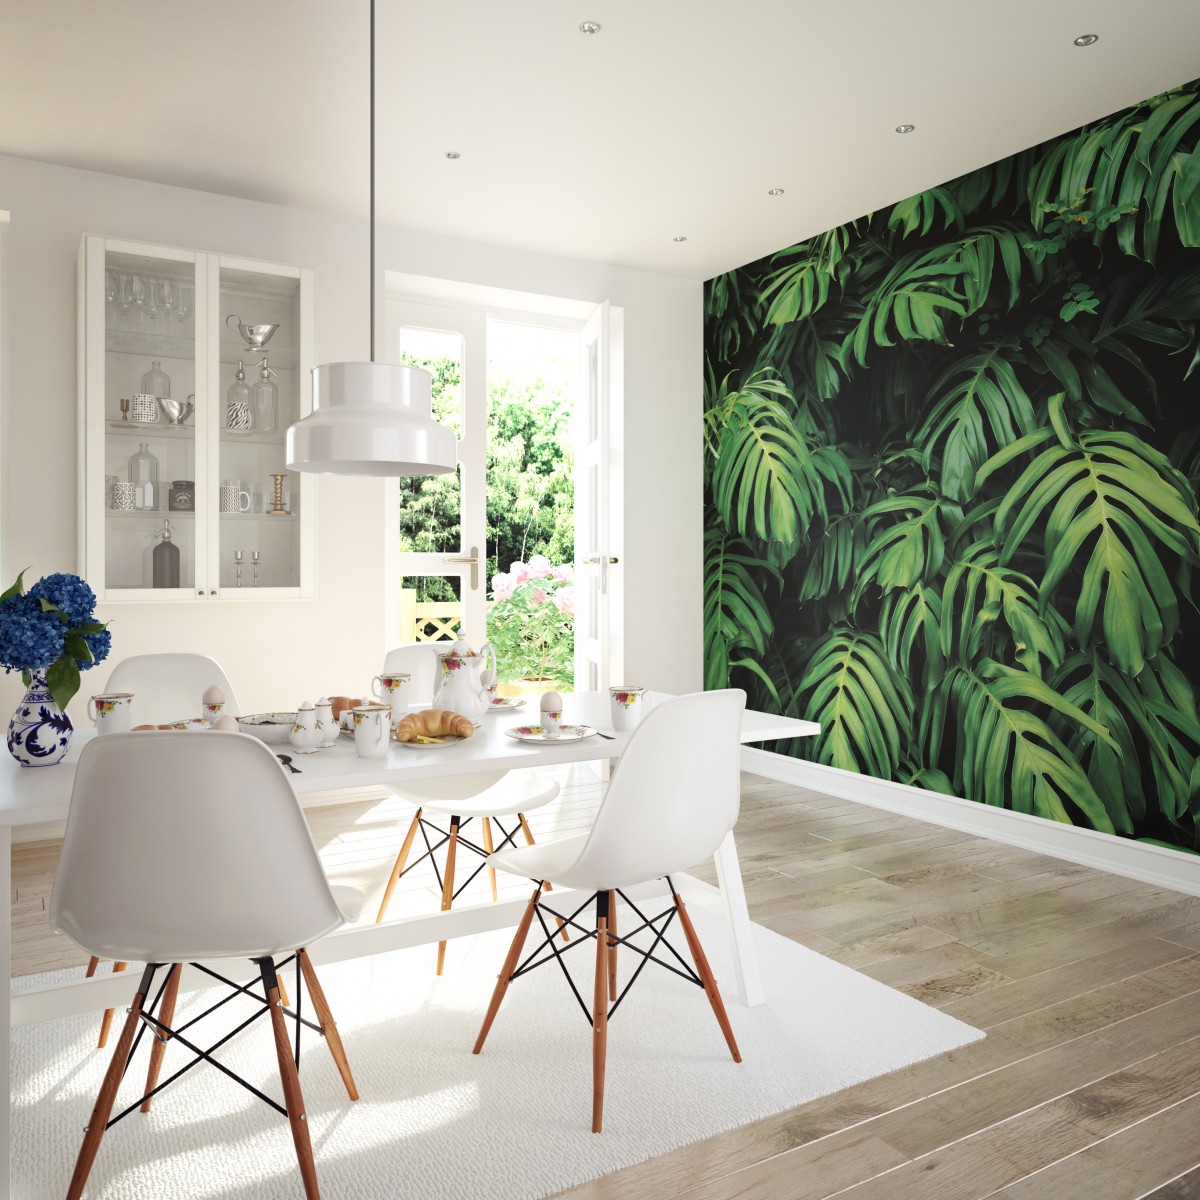 Fototapet Rainforest Leaves L, Emerald, Origin Murals, 350x280cm,  